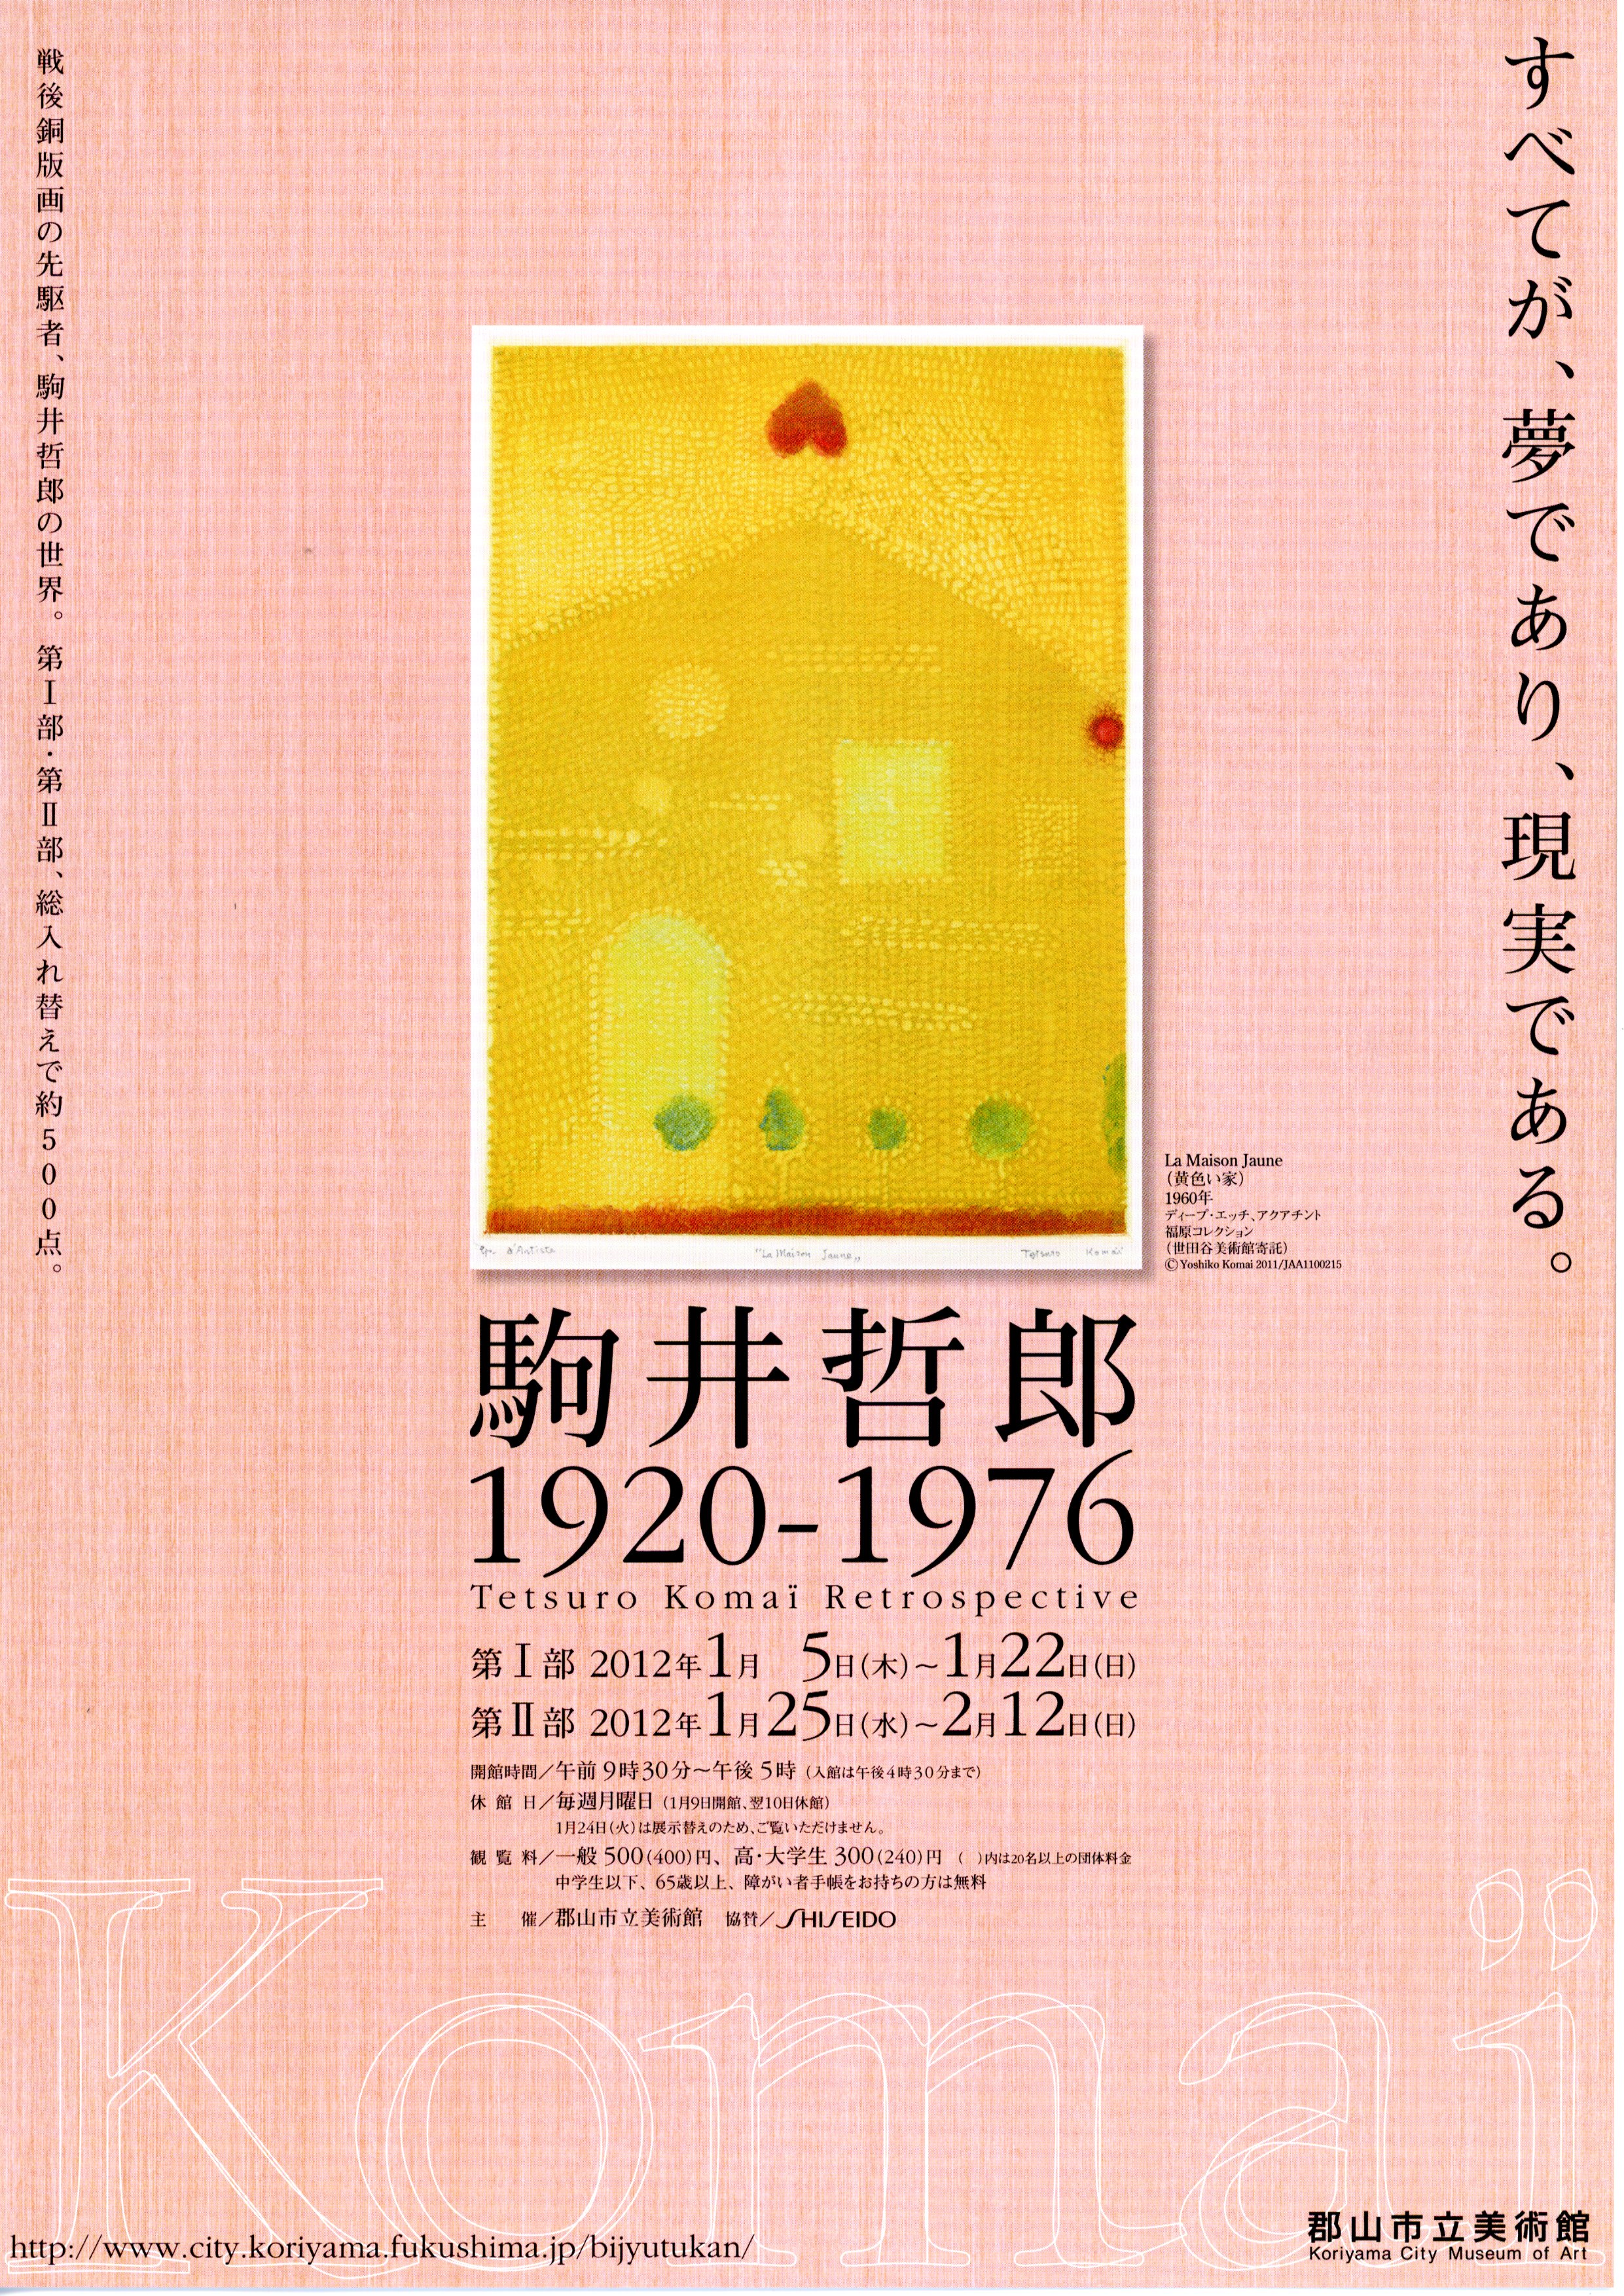 駒井哲郎1920〜1976展のポスター